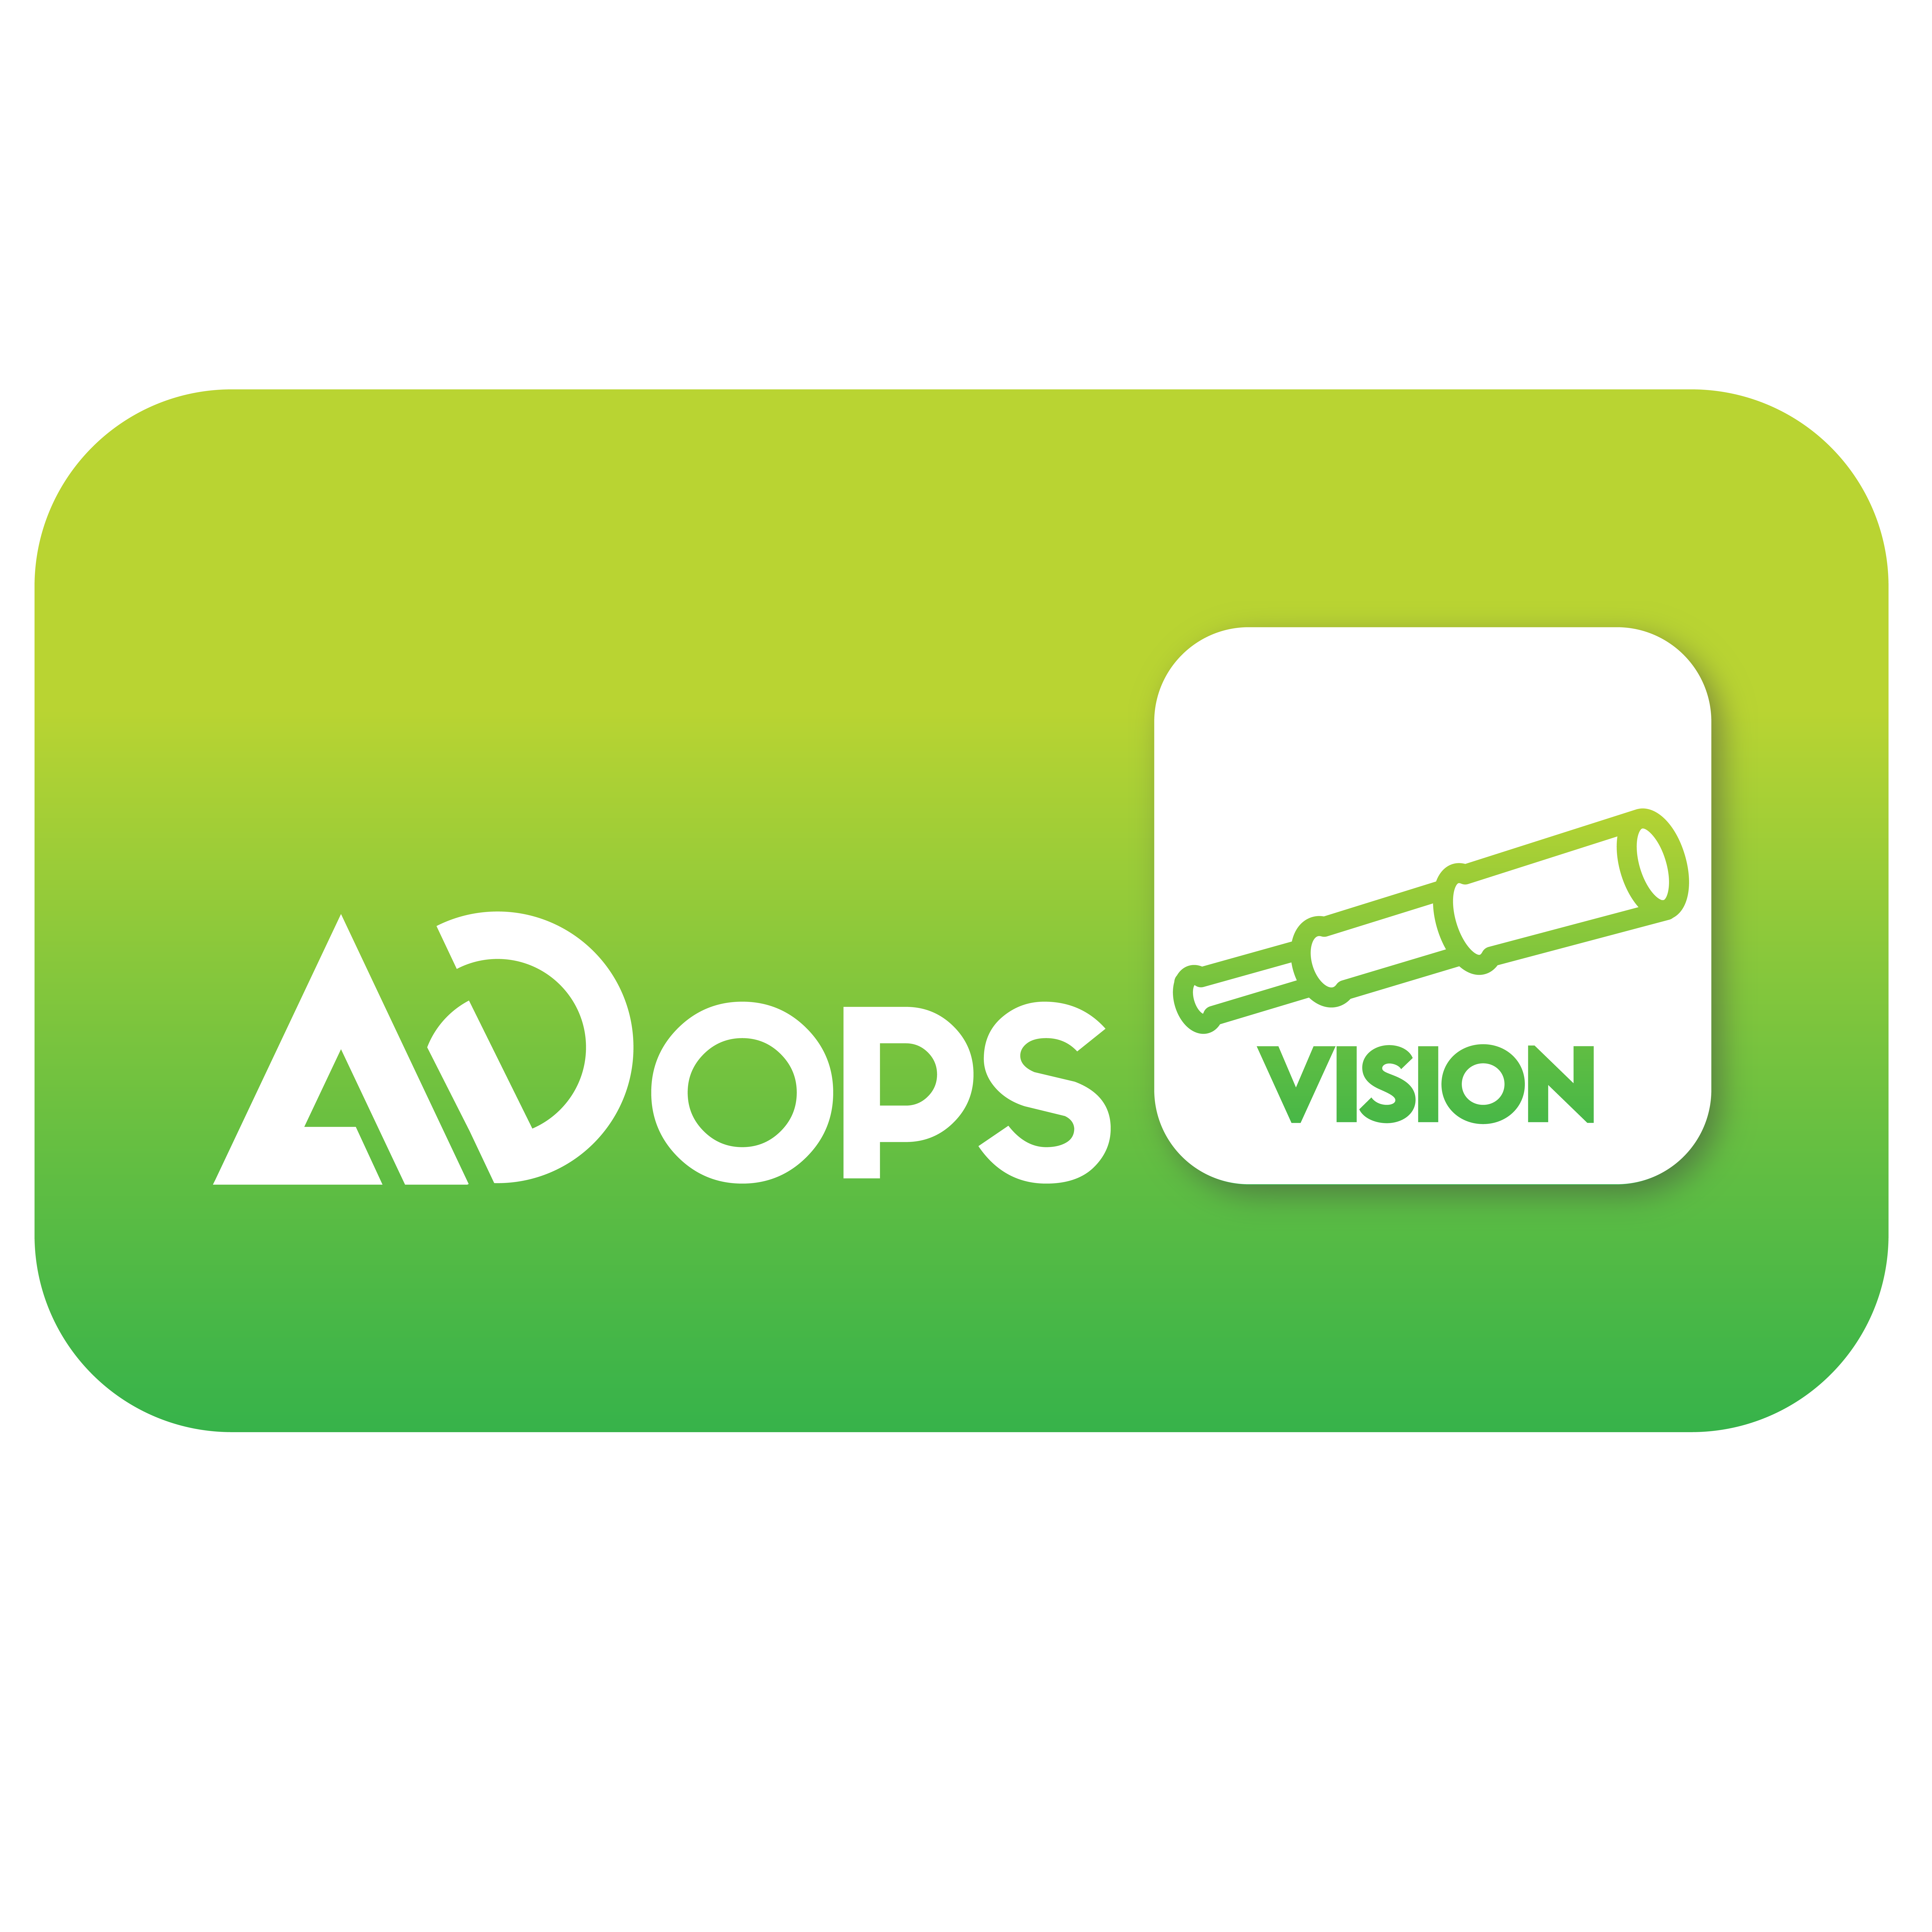 AdOps Vision